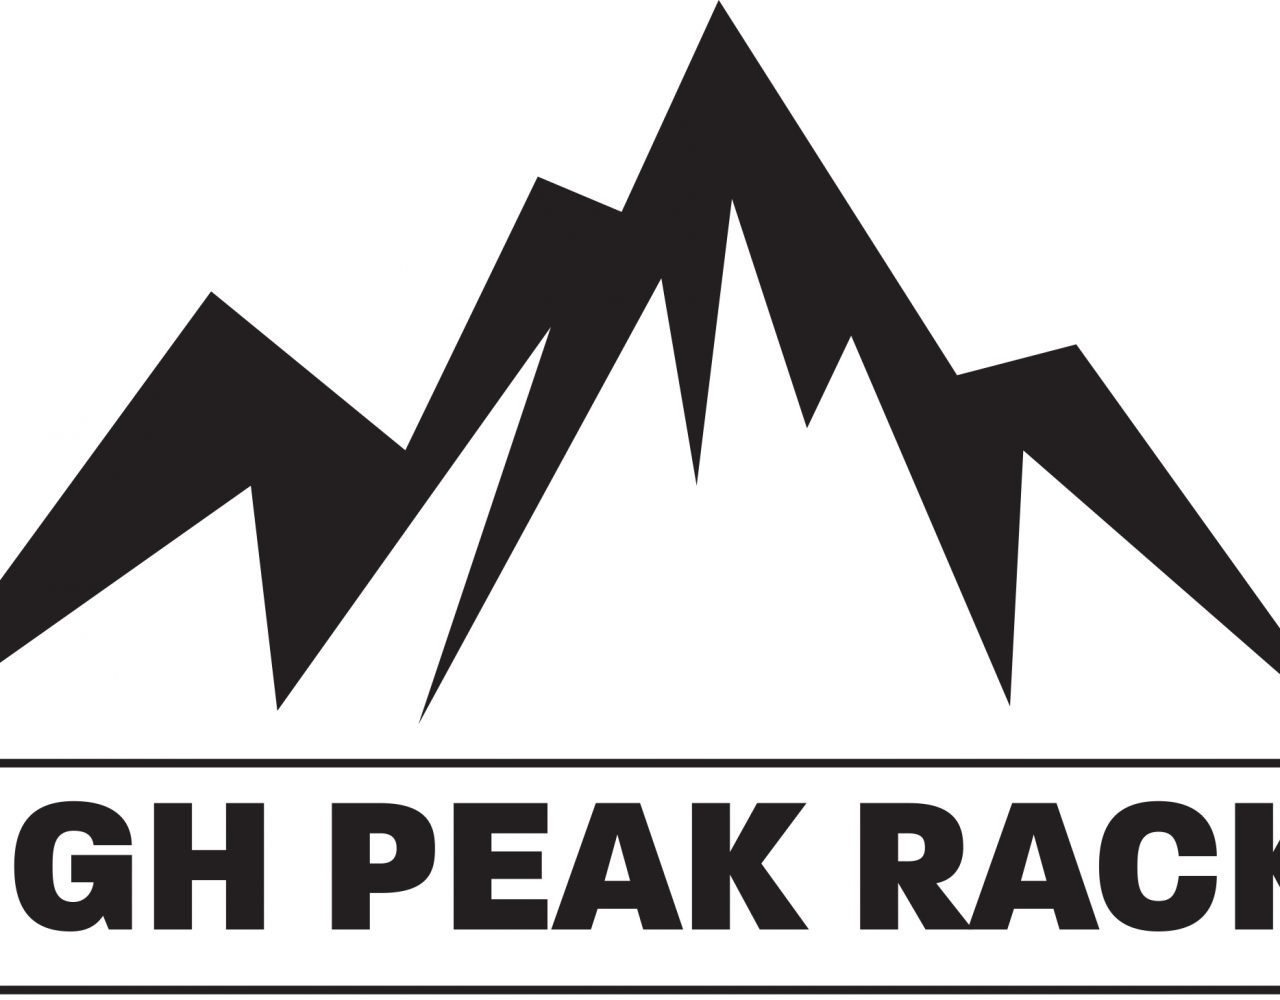 High Peak Racks